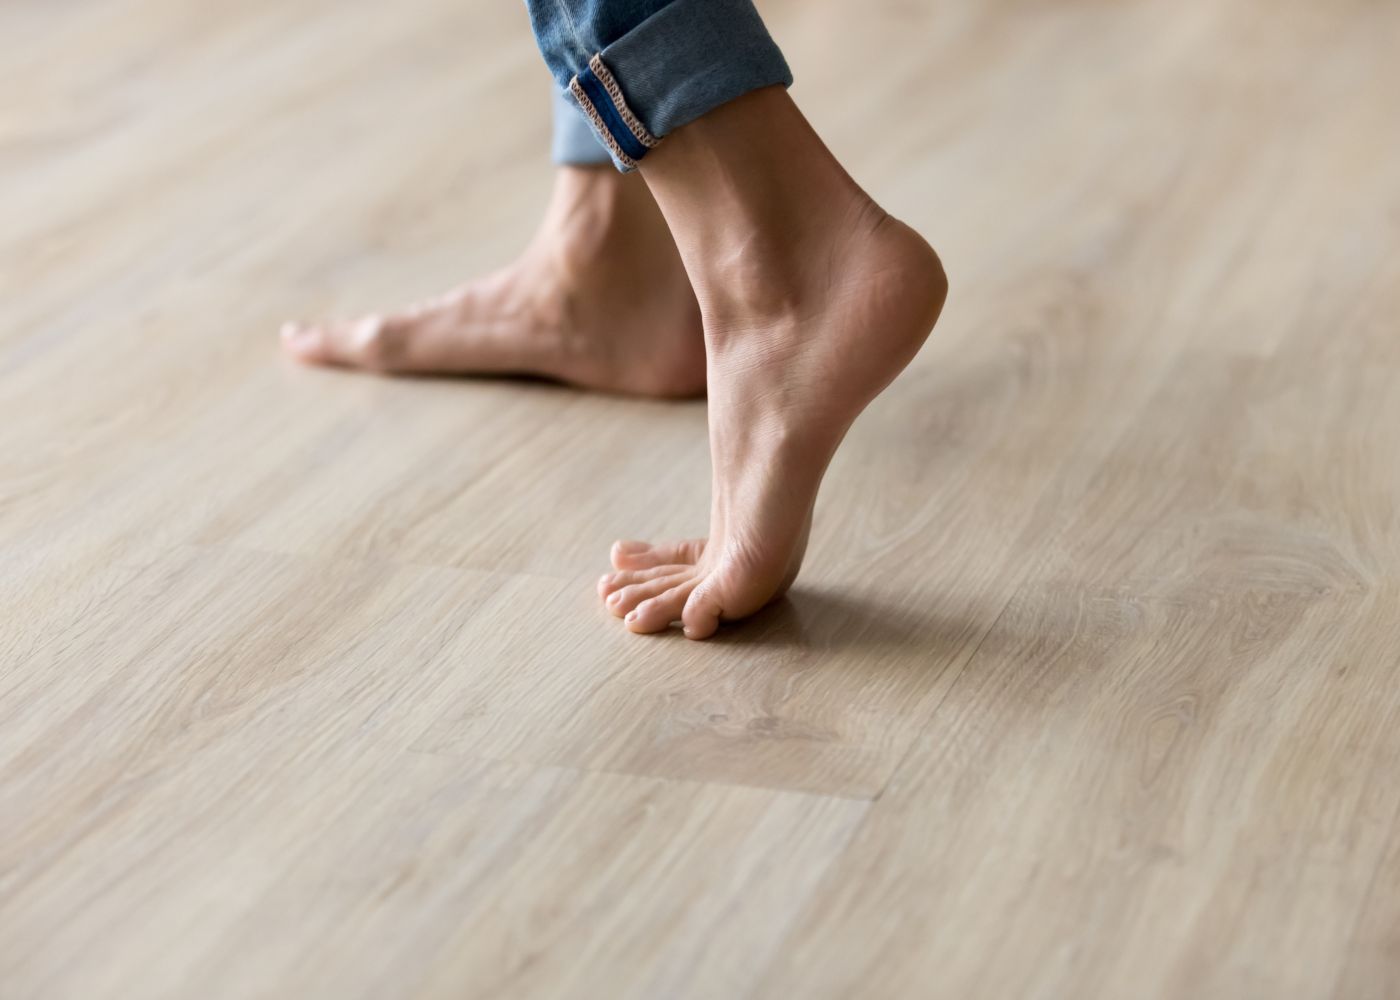 pessoa descalça a caminhar em pavimento flutuante de madeira